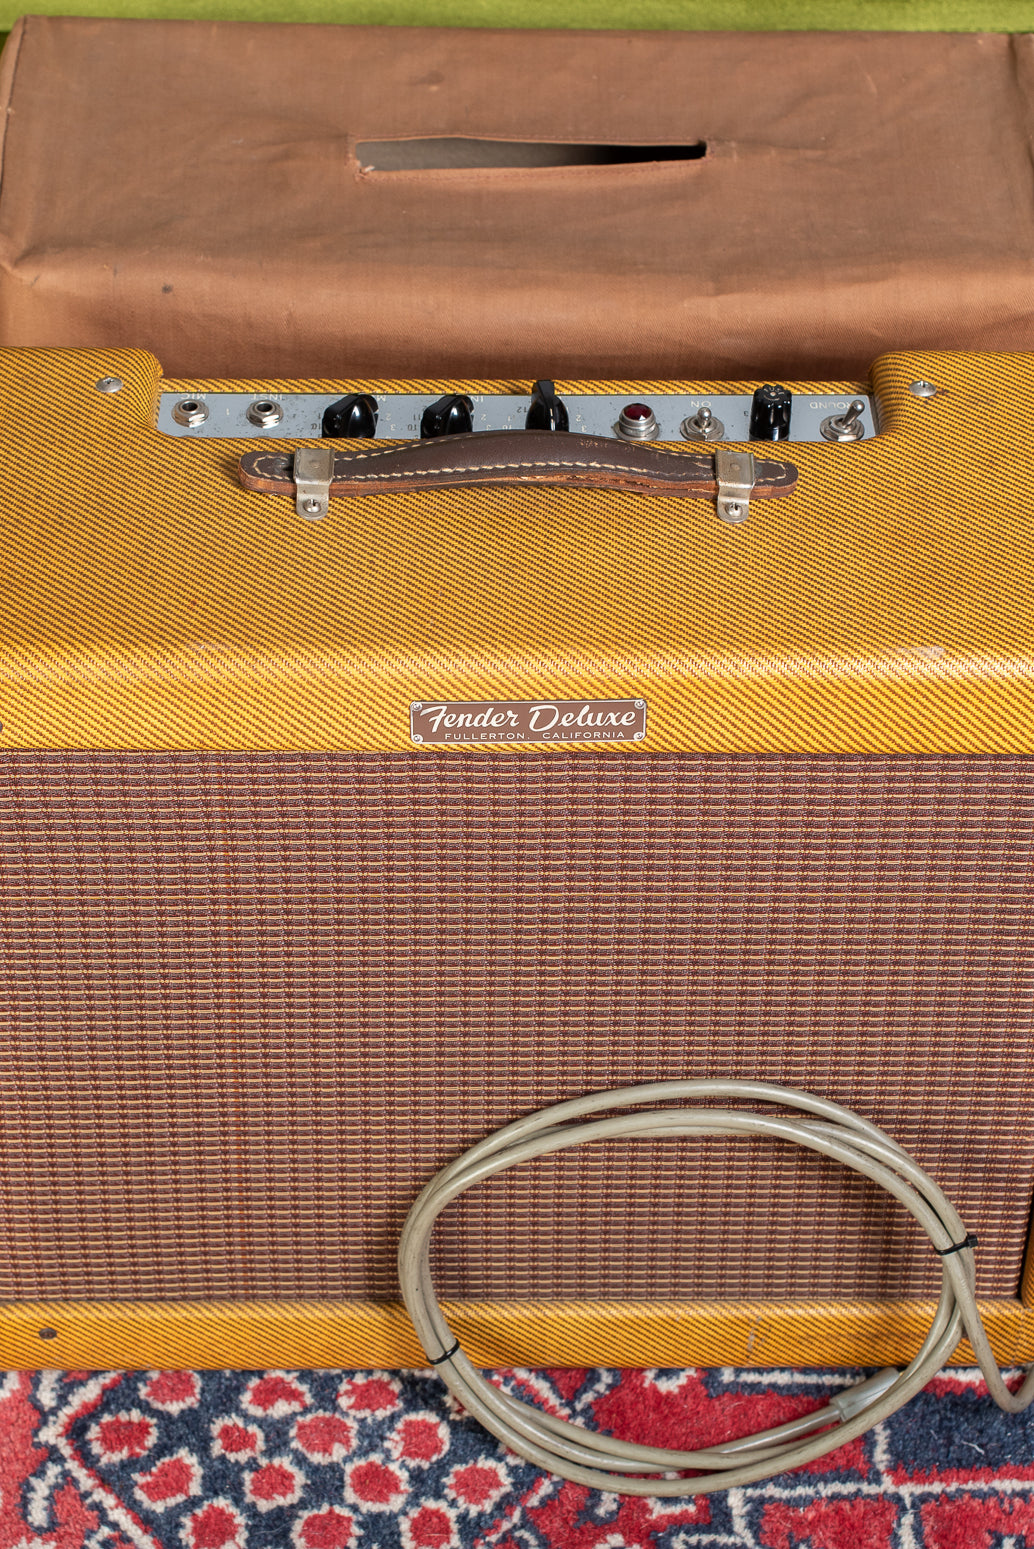 1959 Fender Deluxe Amp tweed